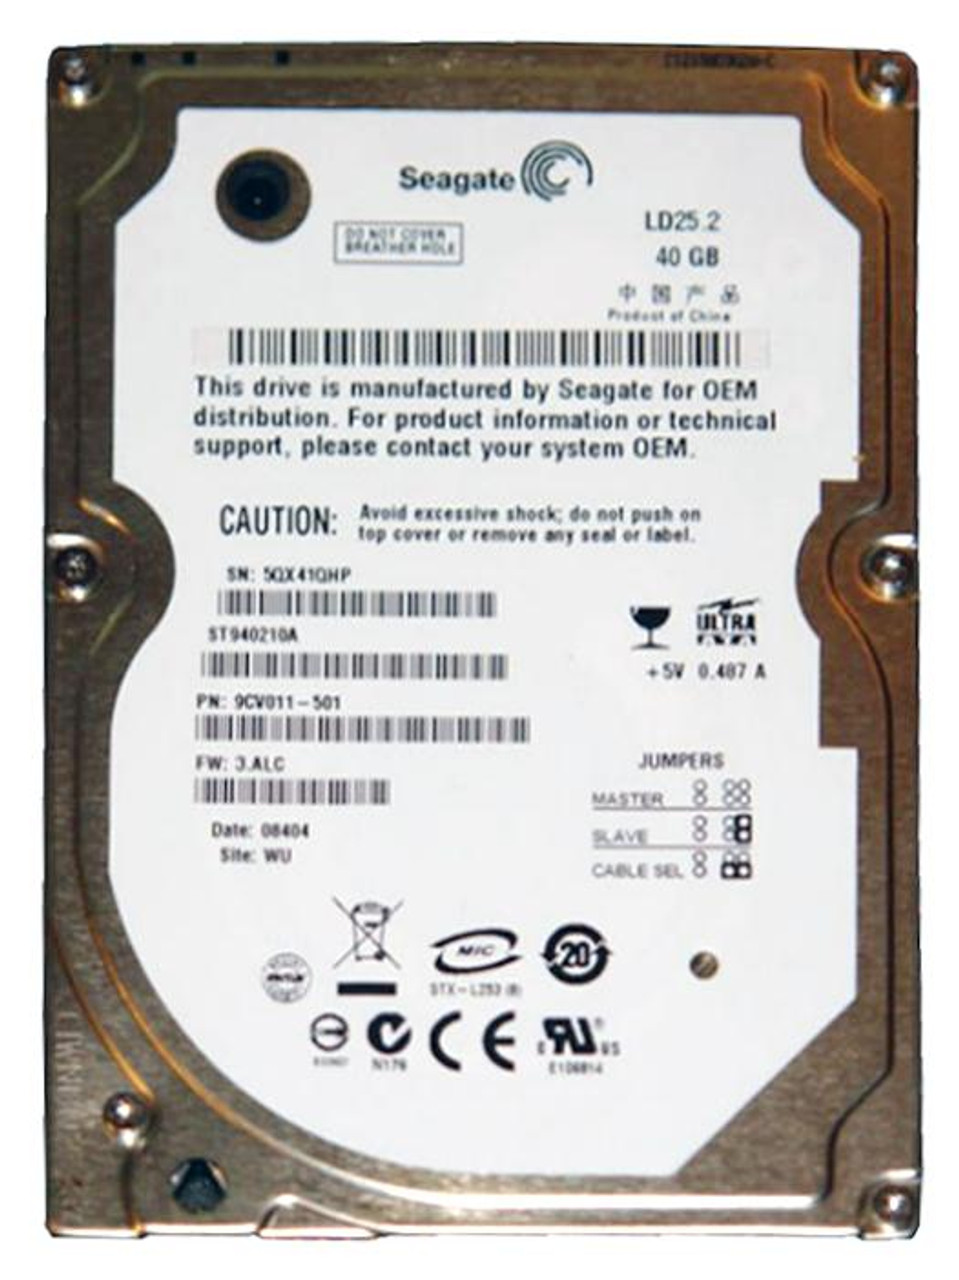 ST940210A - Seagate LD25.2 Series 40GB 5400RPM ATA-100 2MB Cache 2.5-inch Internal Hard Drive